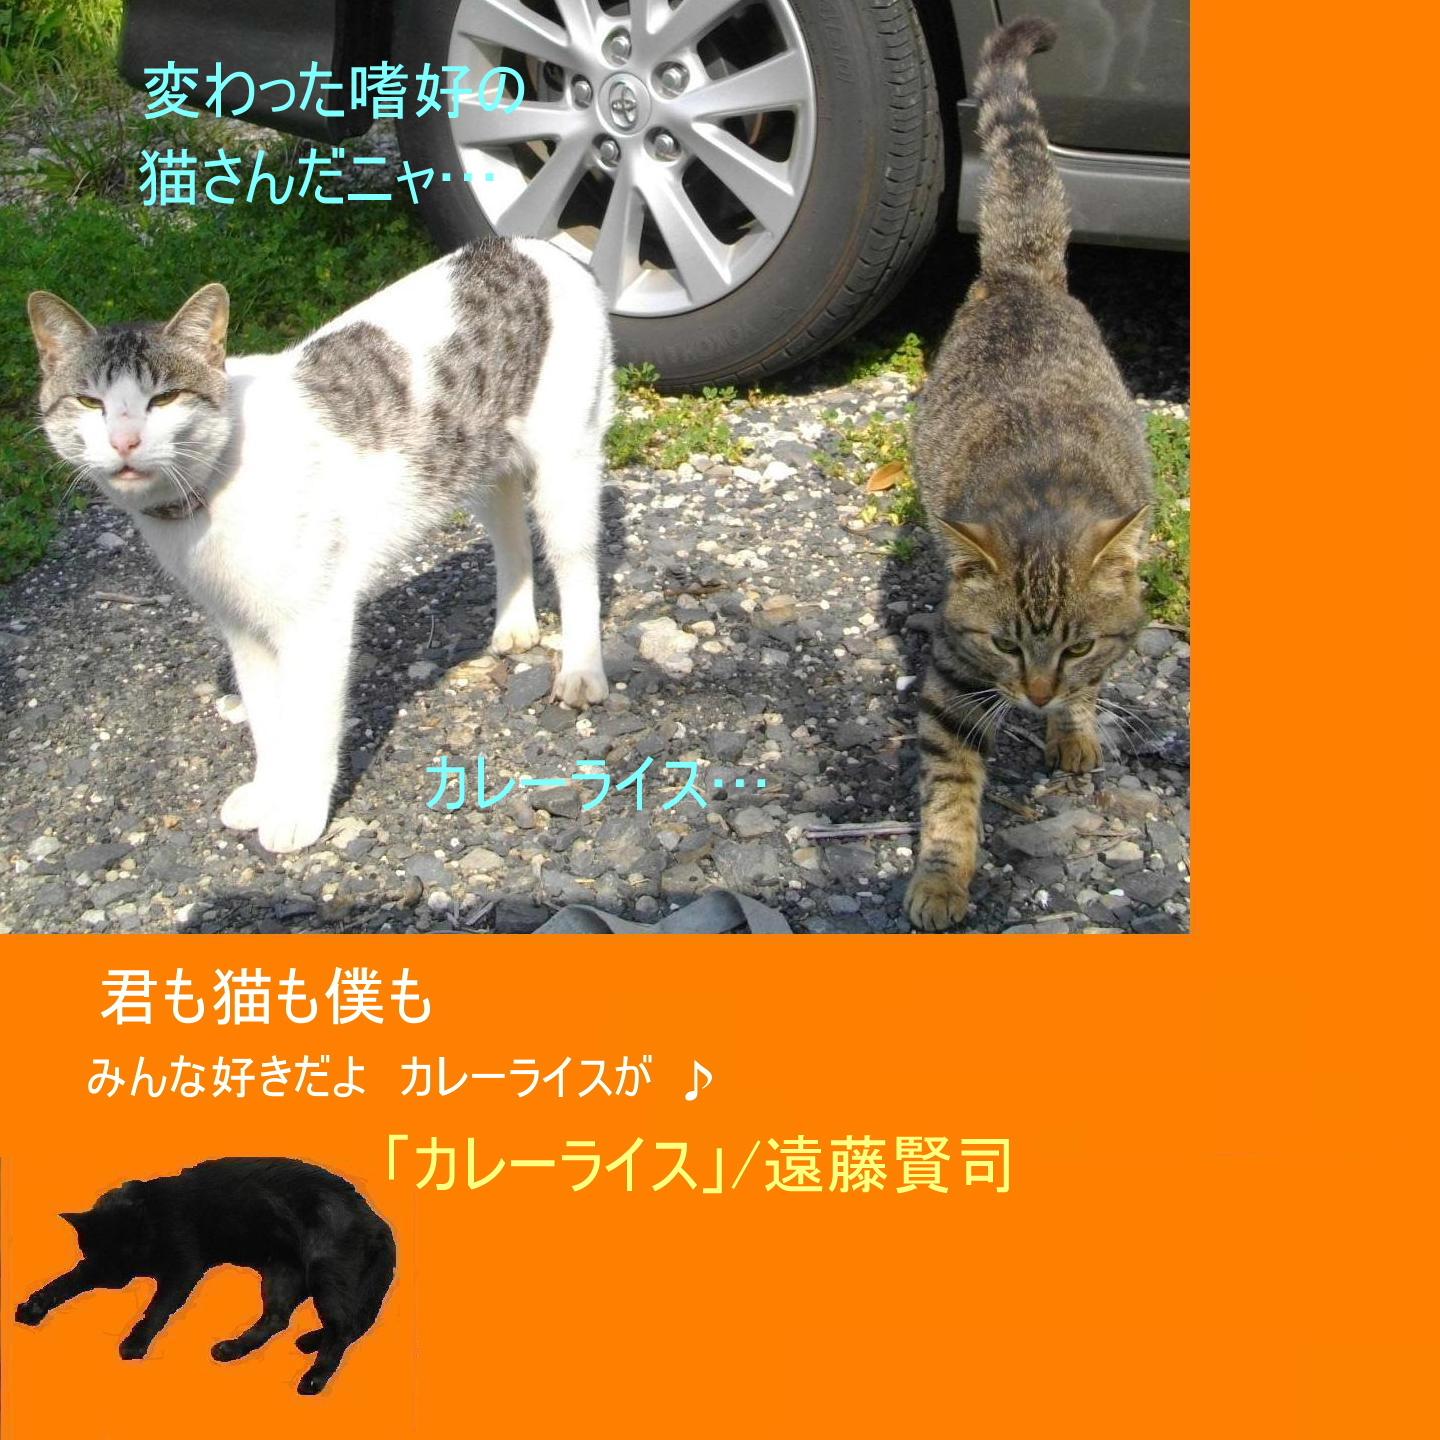 須磨章「猫は犬より働いた」_e0265768_23113544.jpg